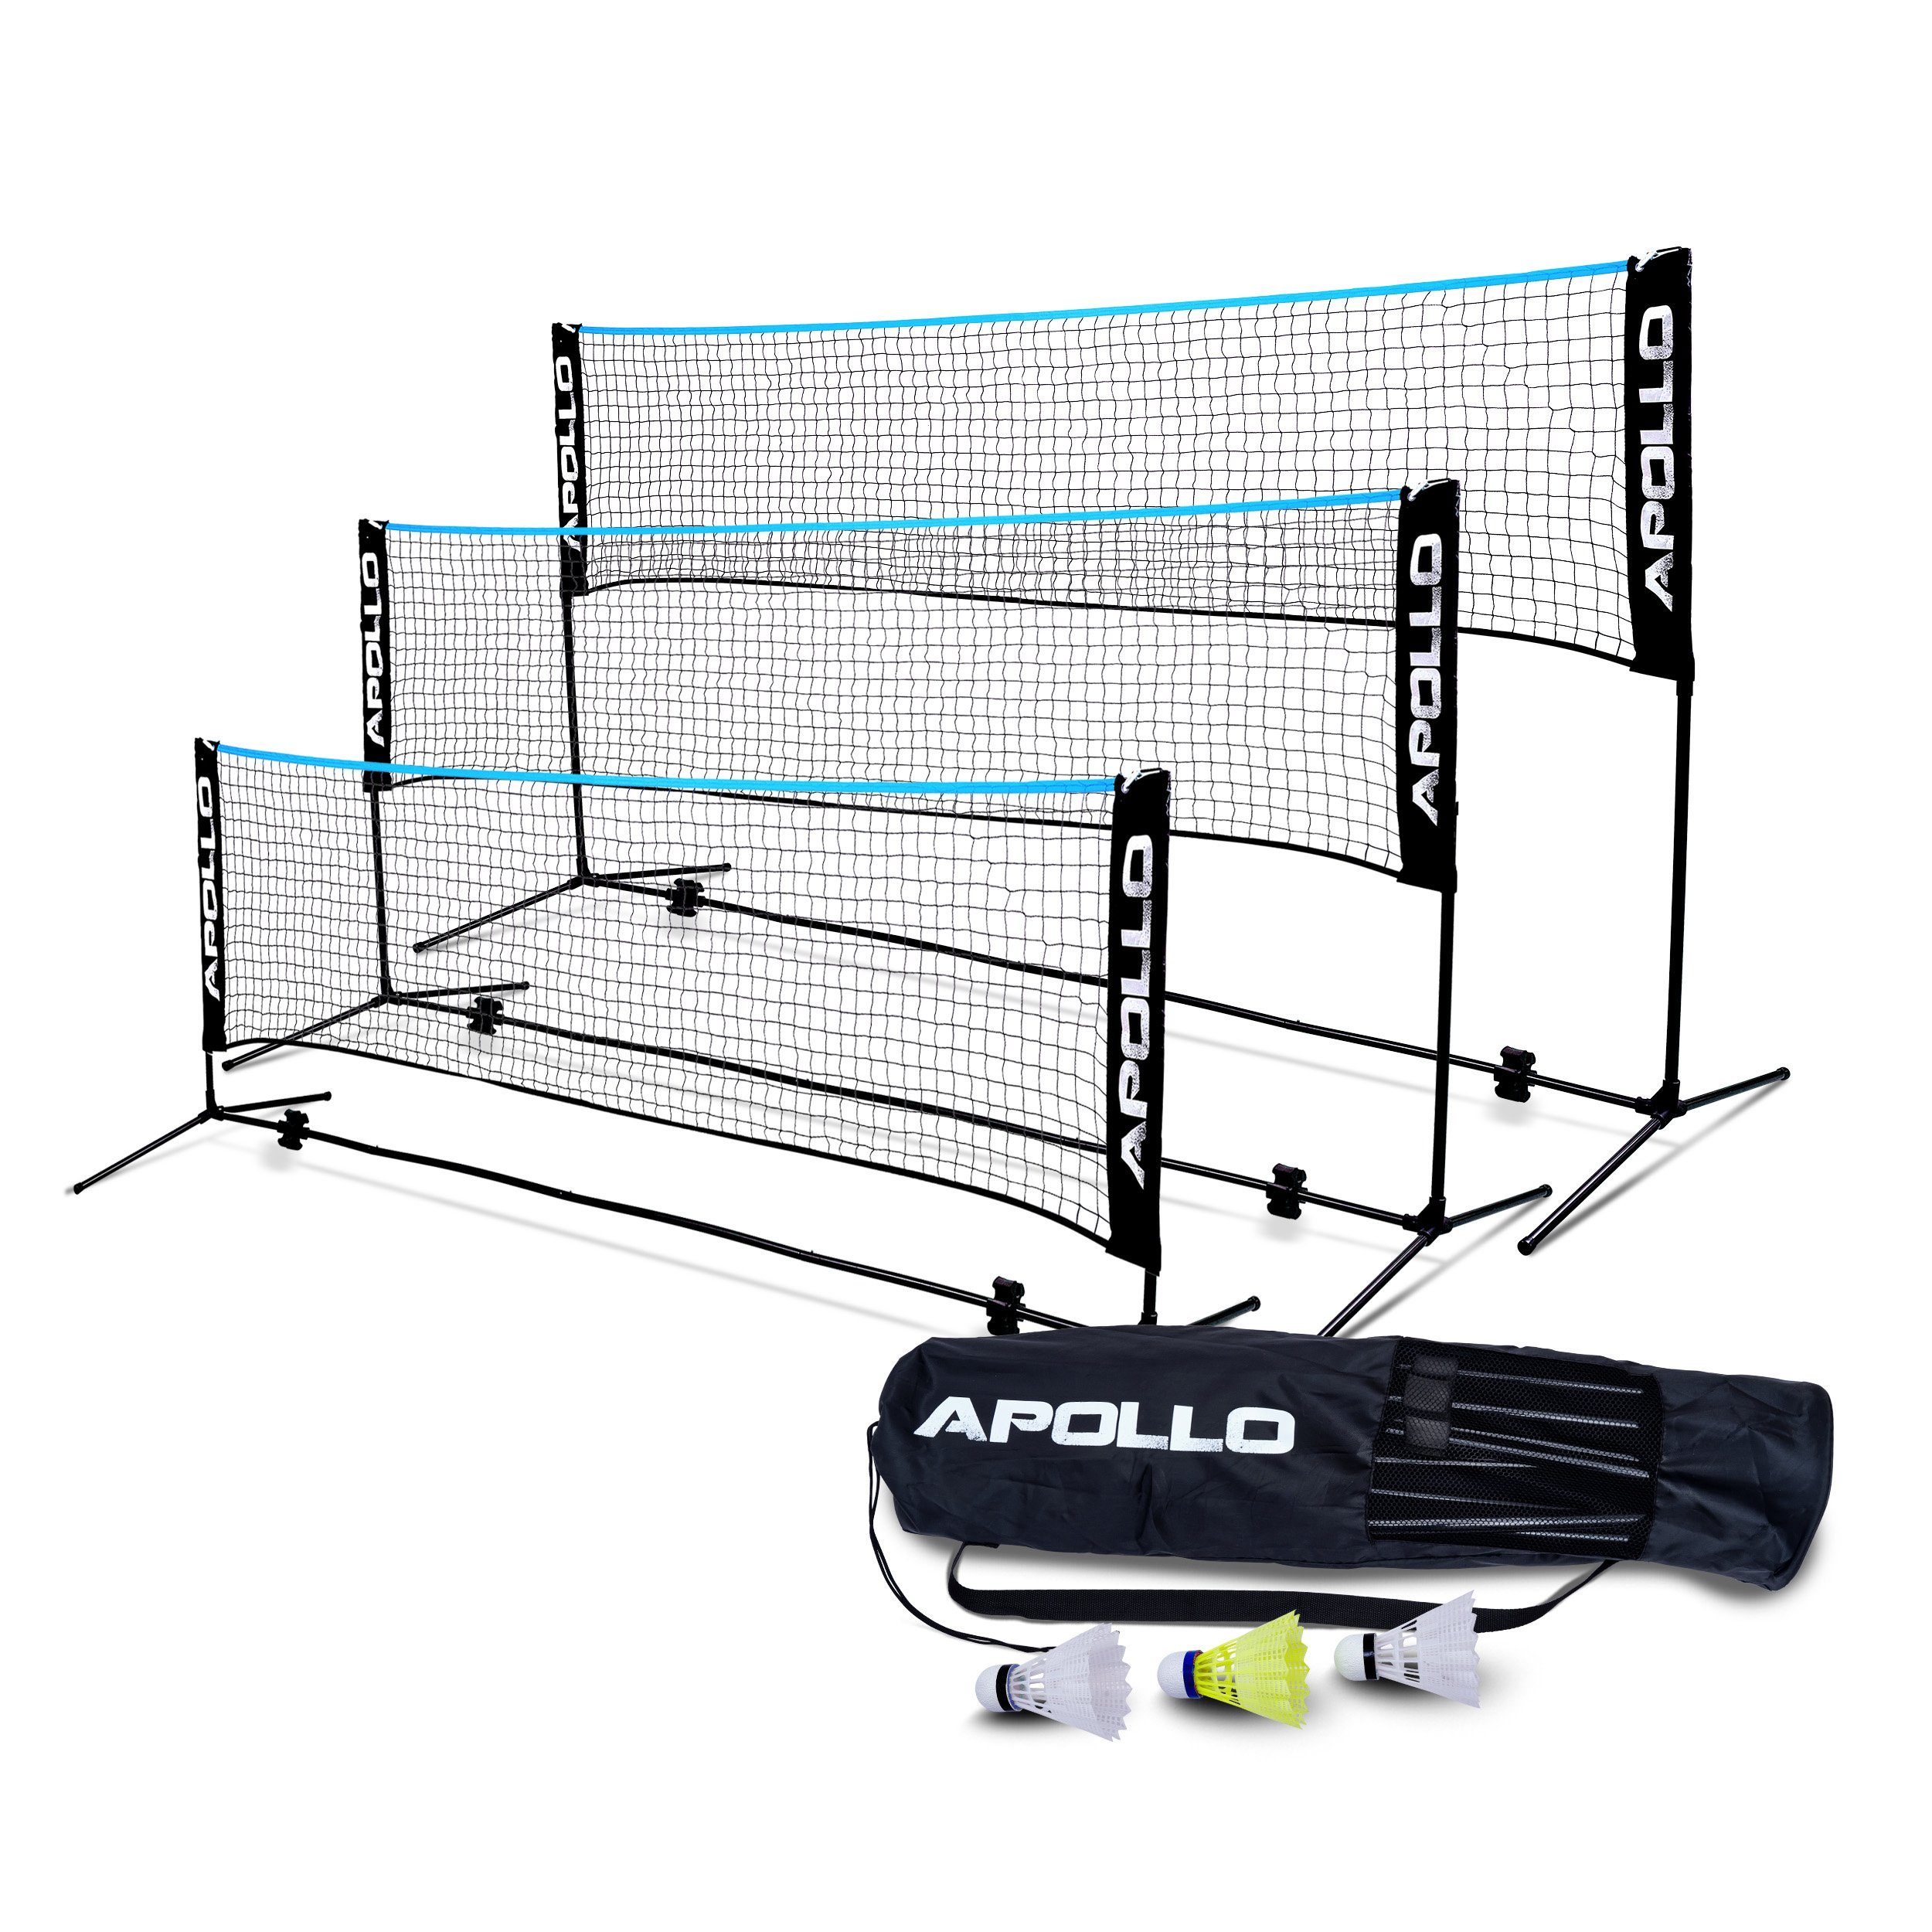 Apollo Badmintonnetz Badminton und Volleyball Netz, 300 cm, 400 cm, 500 cm, höhenverstellbar, inkl. 3 Federbällen Schwarz/Blau